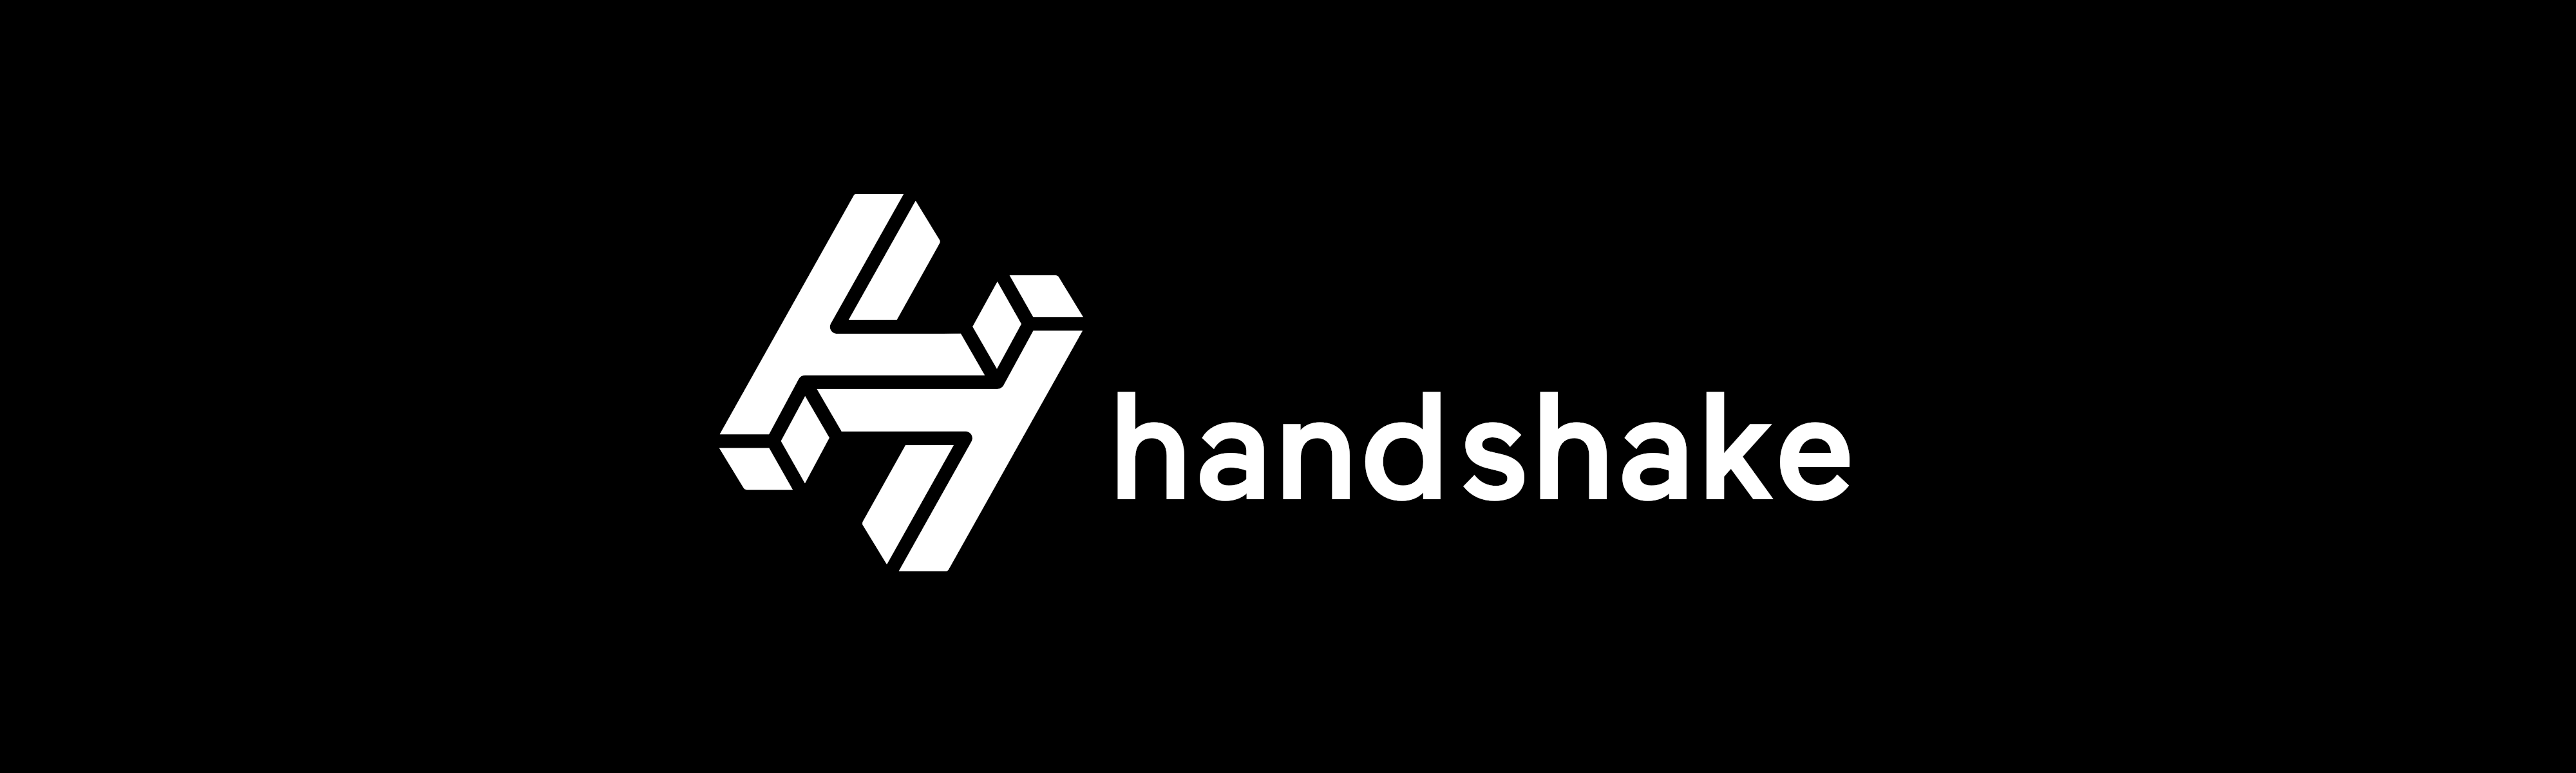 handshaker slogan